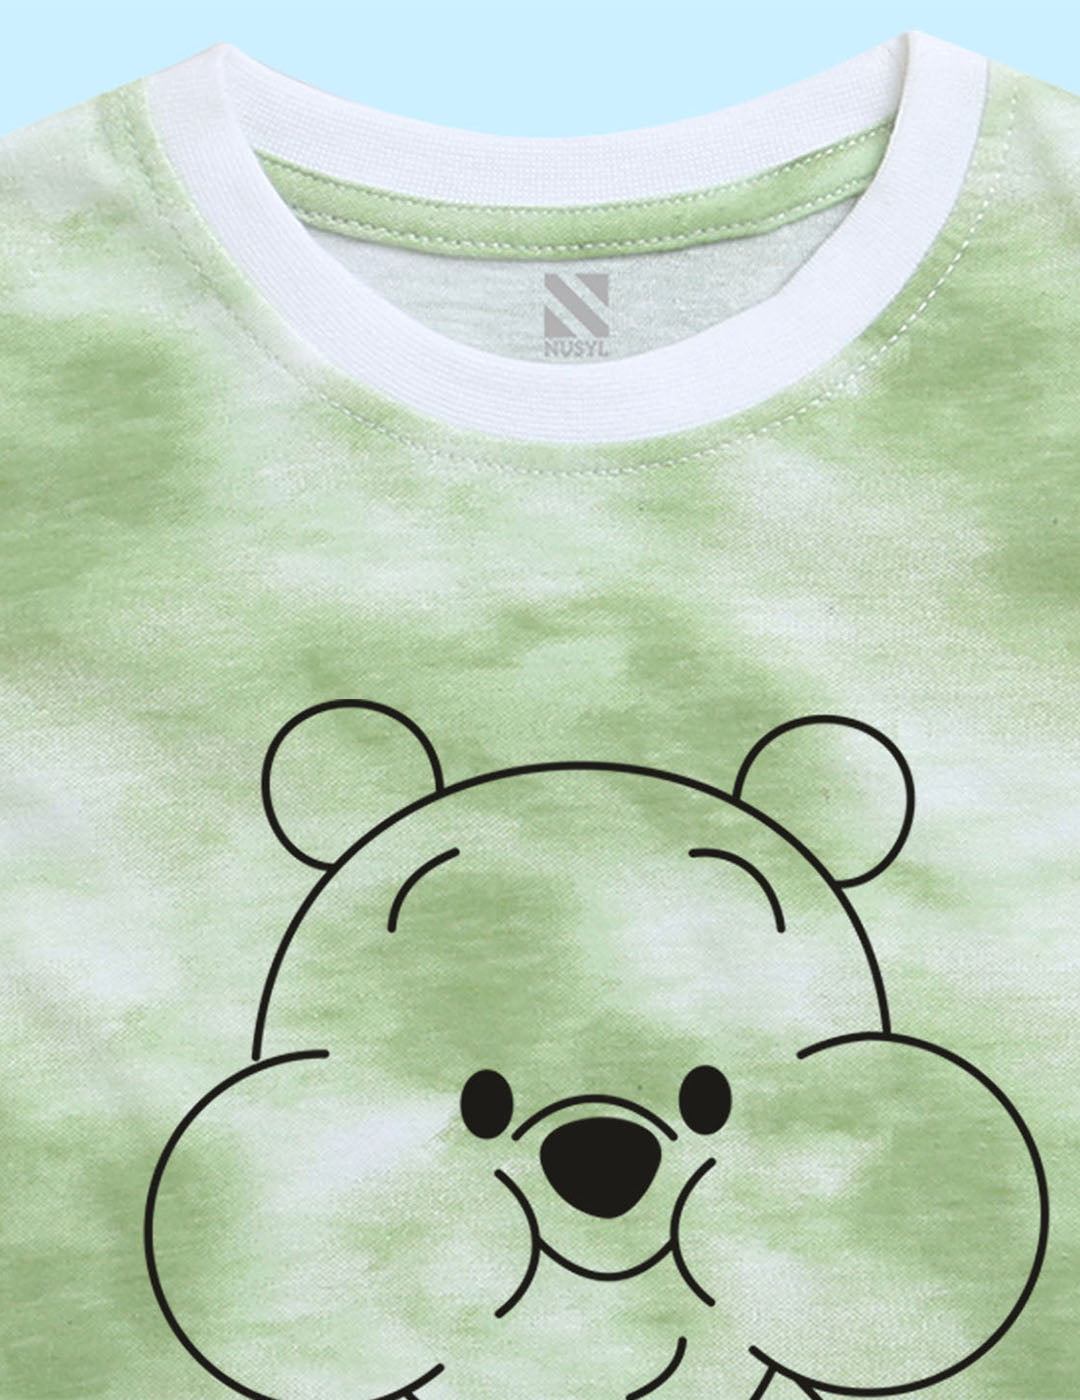 Nusyl infants green have fun printed Tie & Dye tshirt.